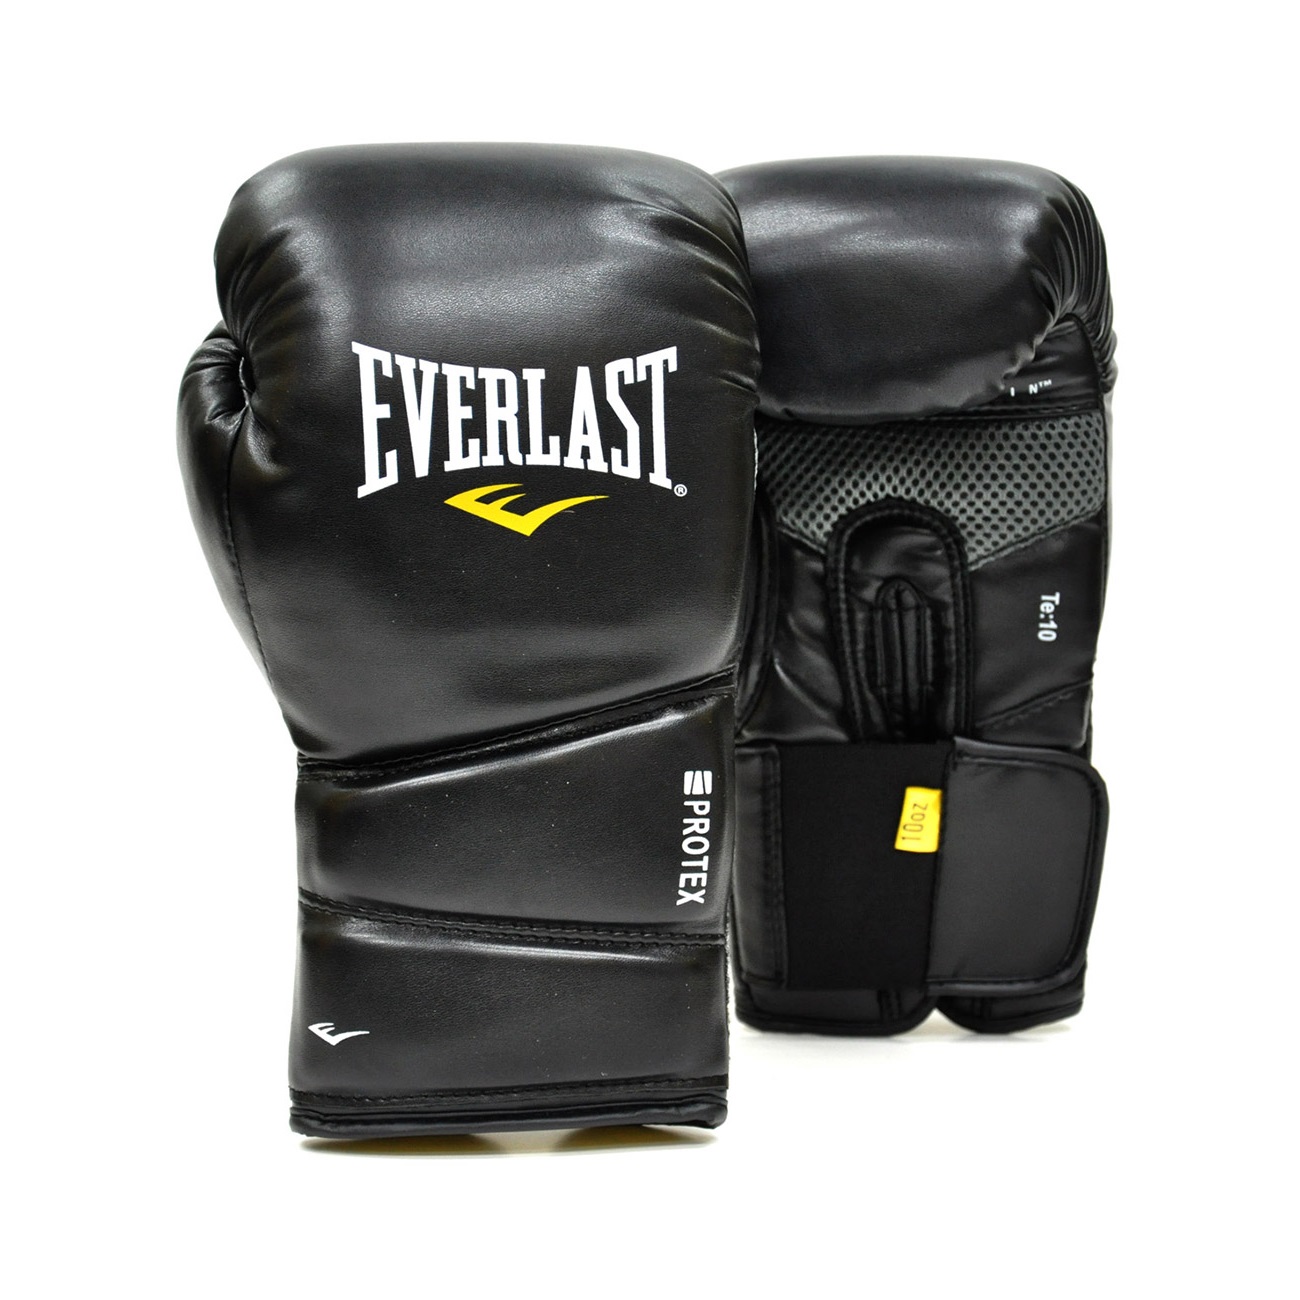 Gants de boxe Everlast core 2 blanc